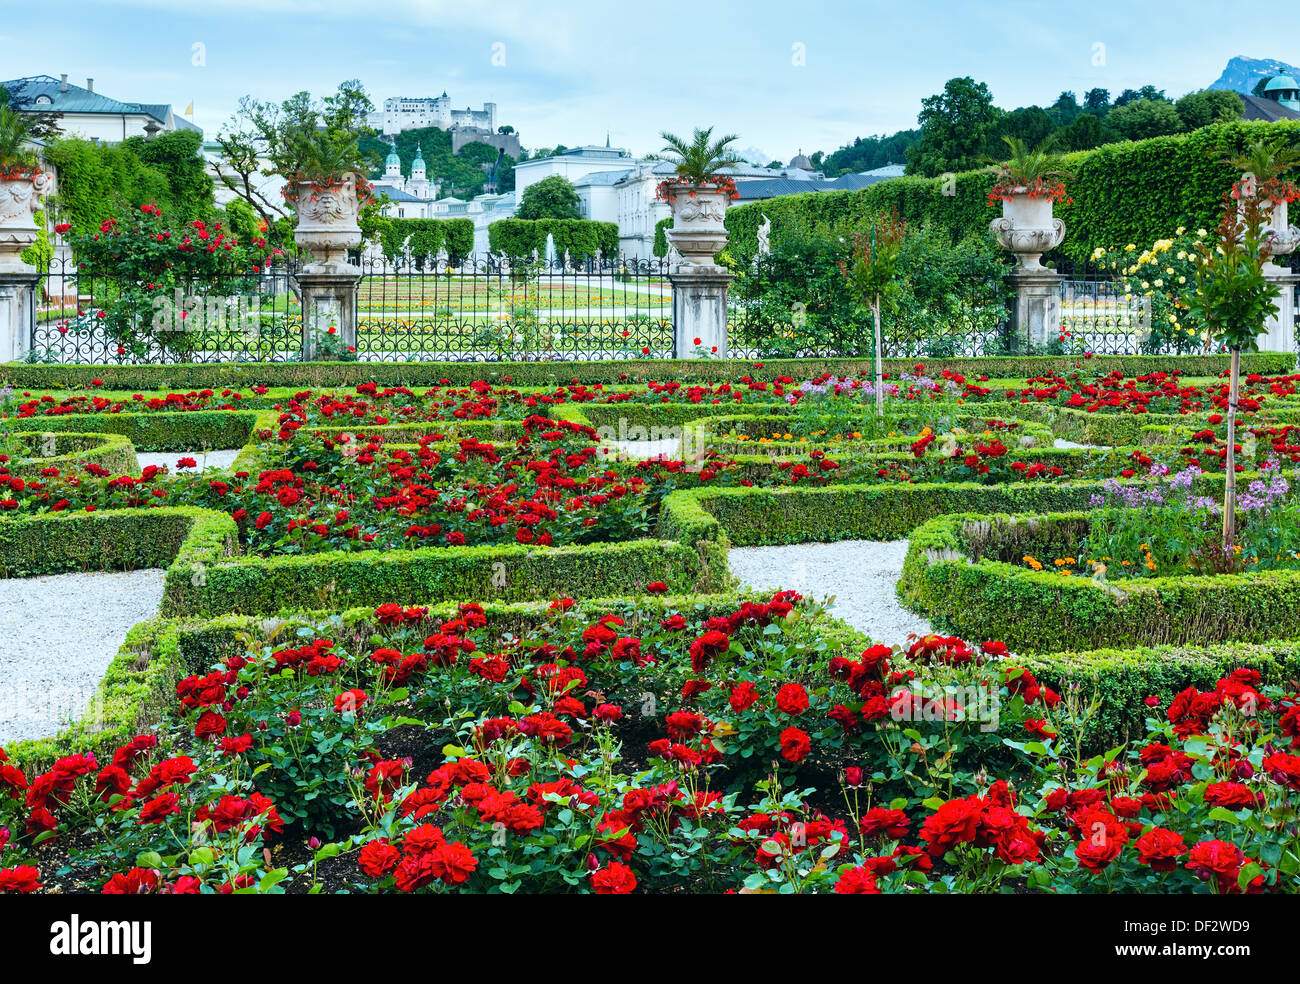 Jardins d'été de Mirabell Palace avec parterres de rose rouge et de la Forteresse Hohensalzburg derrière (Salzbourg, Autriche) Banque D'Images